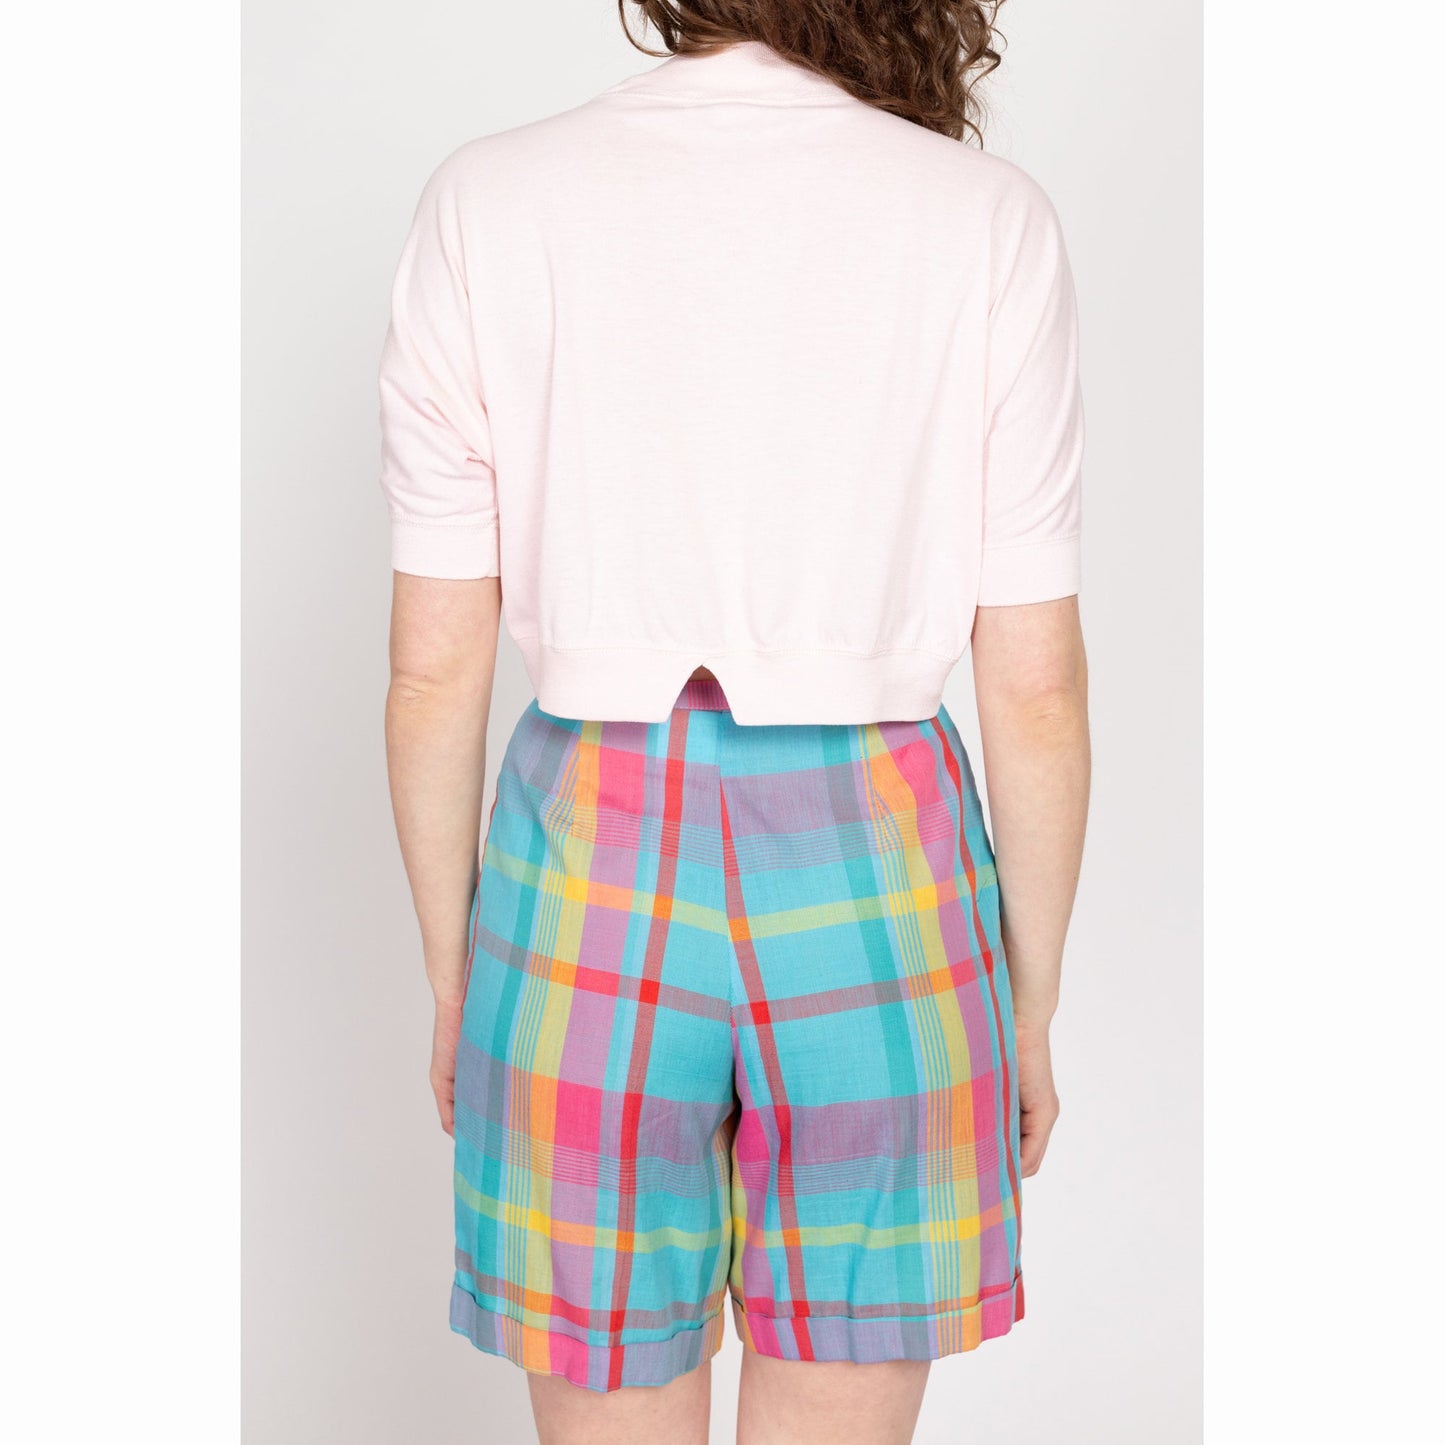 Medium 80s Pastel Pink Mockneck Crop Top | Vintage Plain Notched Waist Short Sleeve Cropped Shirt